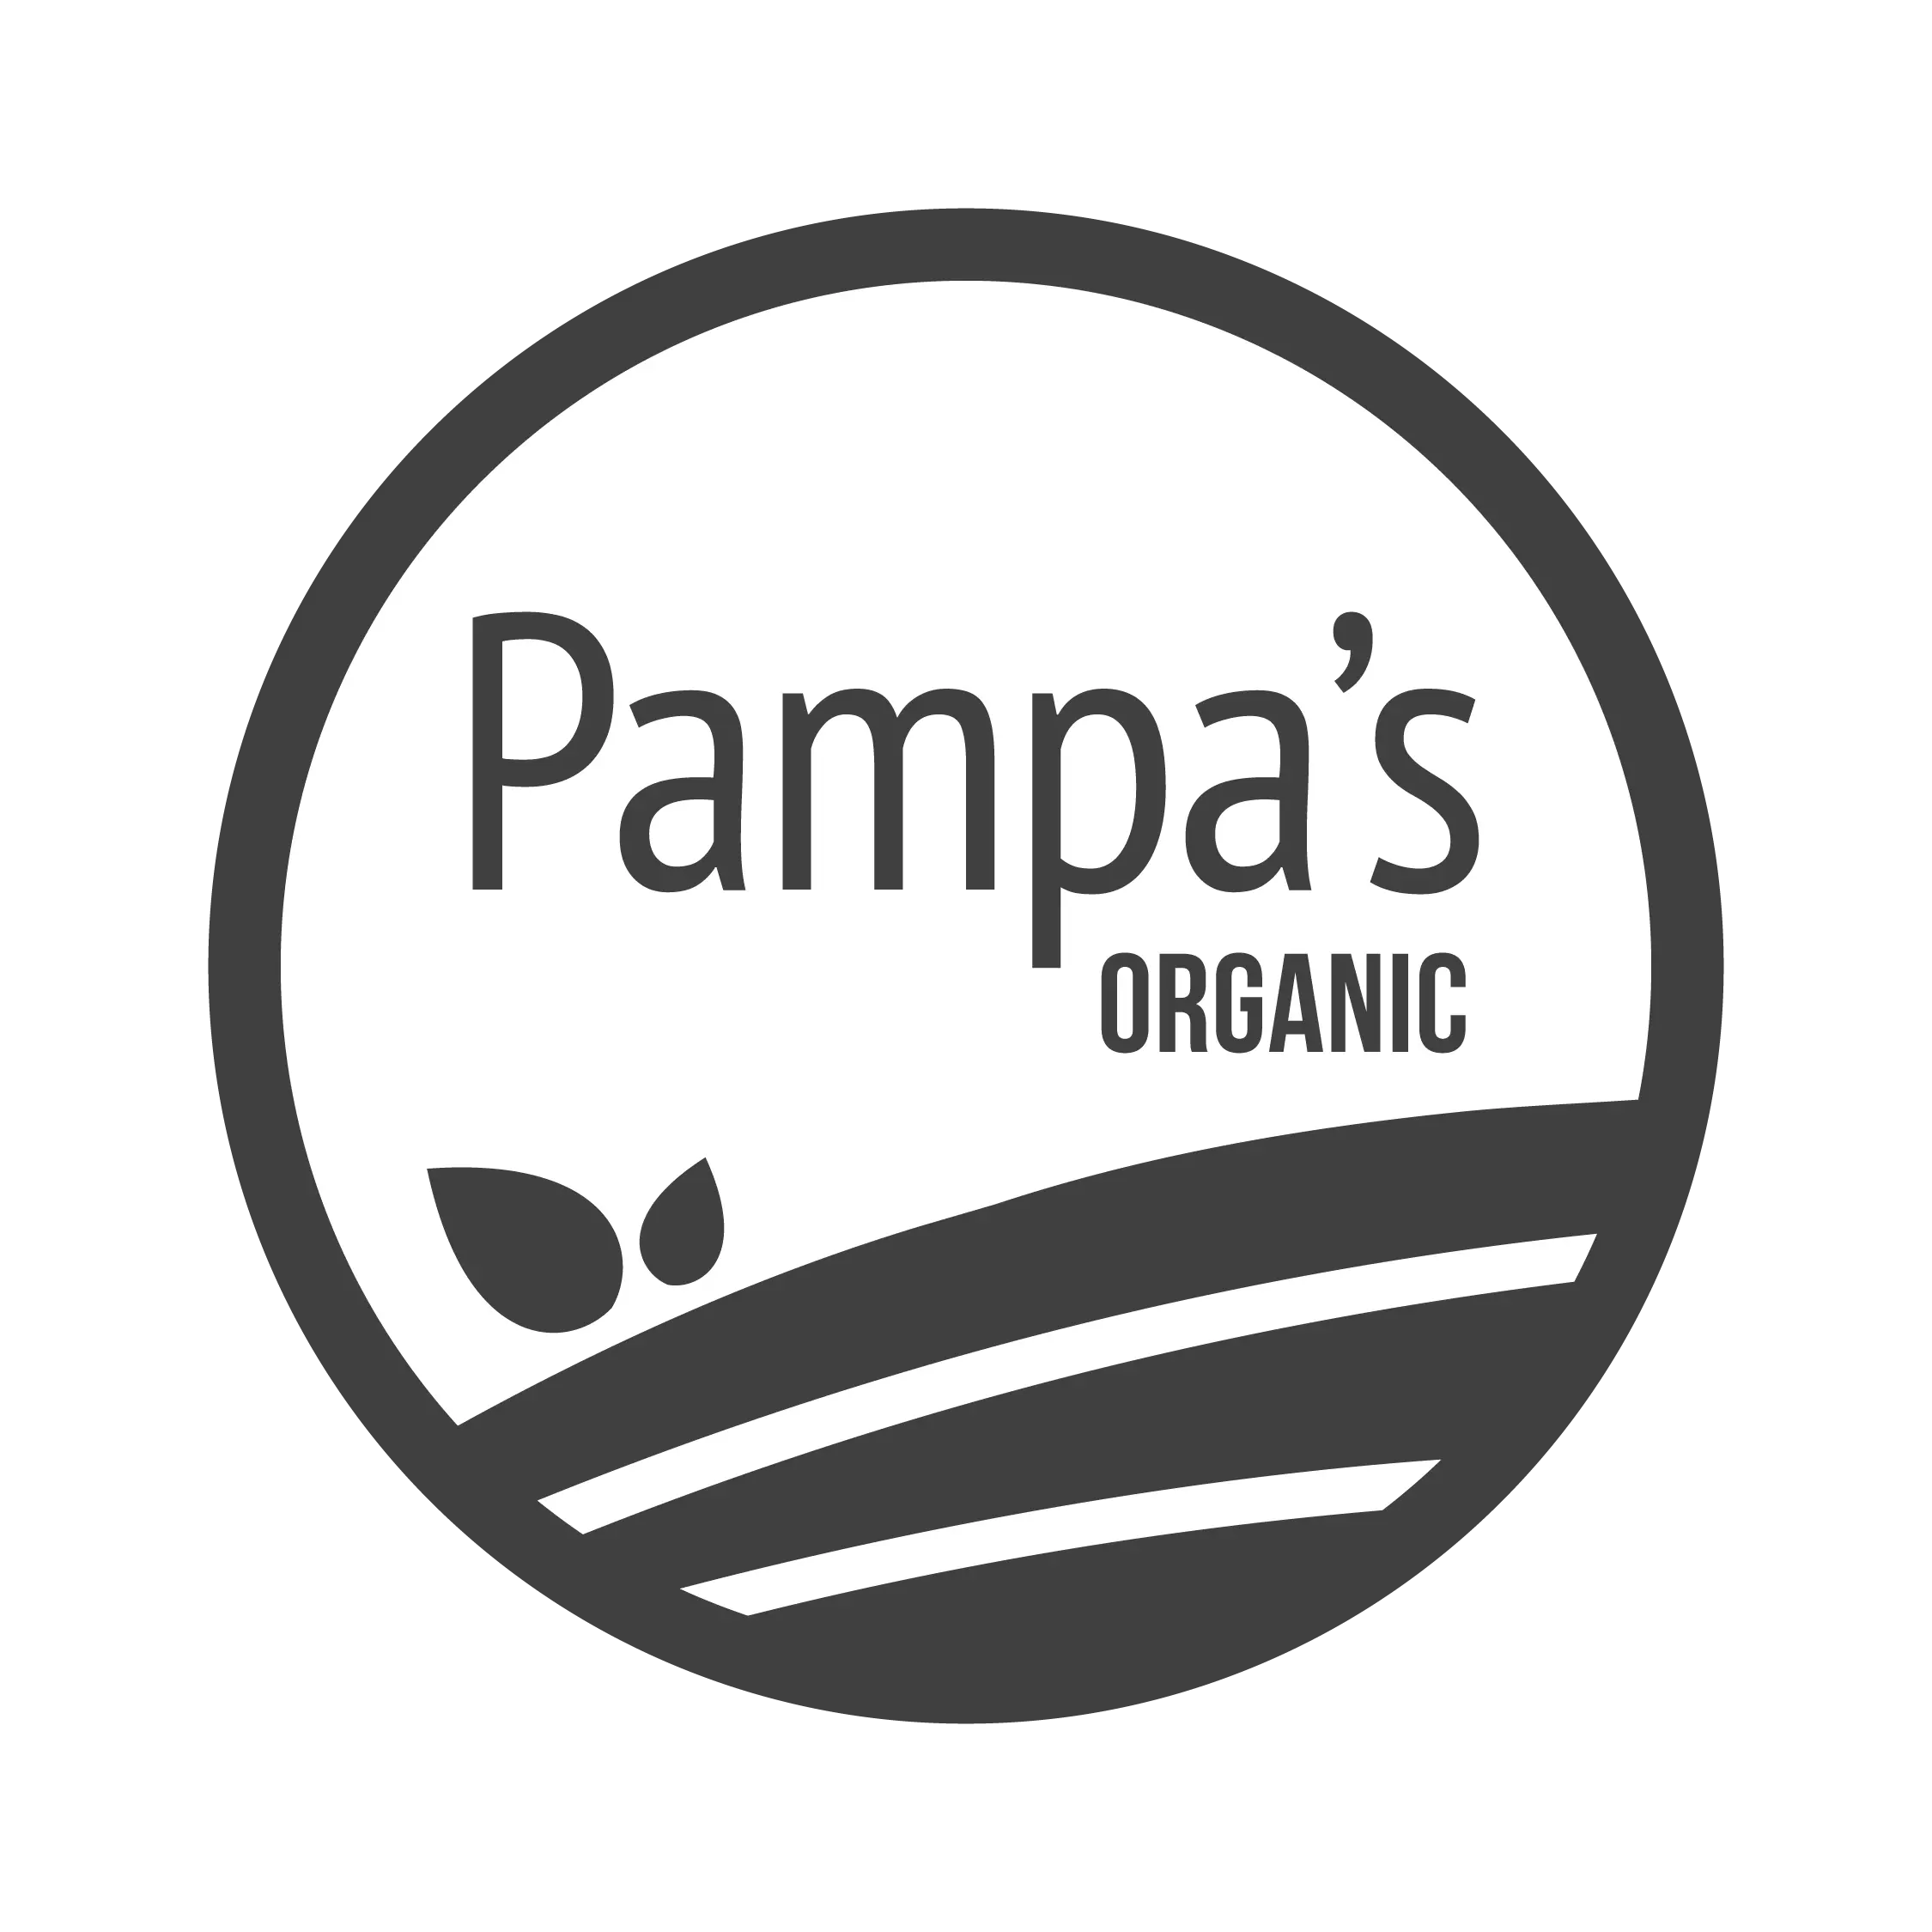 logo-pampas